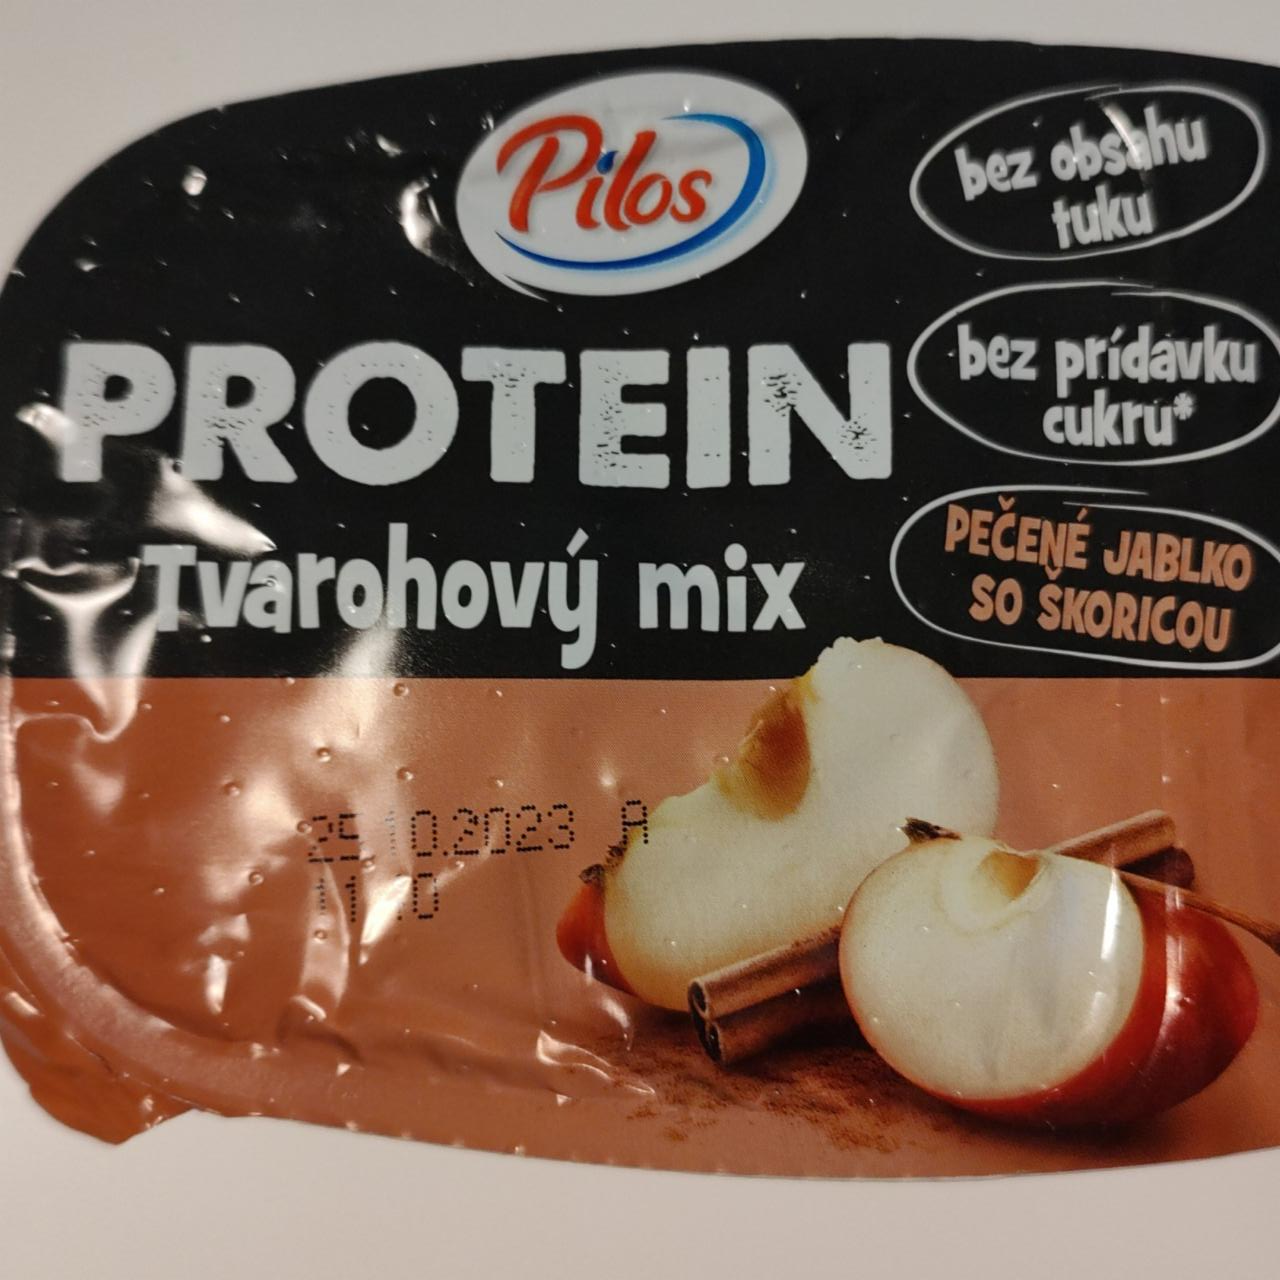 Фото - Йогурт протеїновий Protein Tvarohovy Mix Pilos